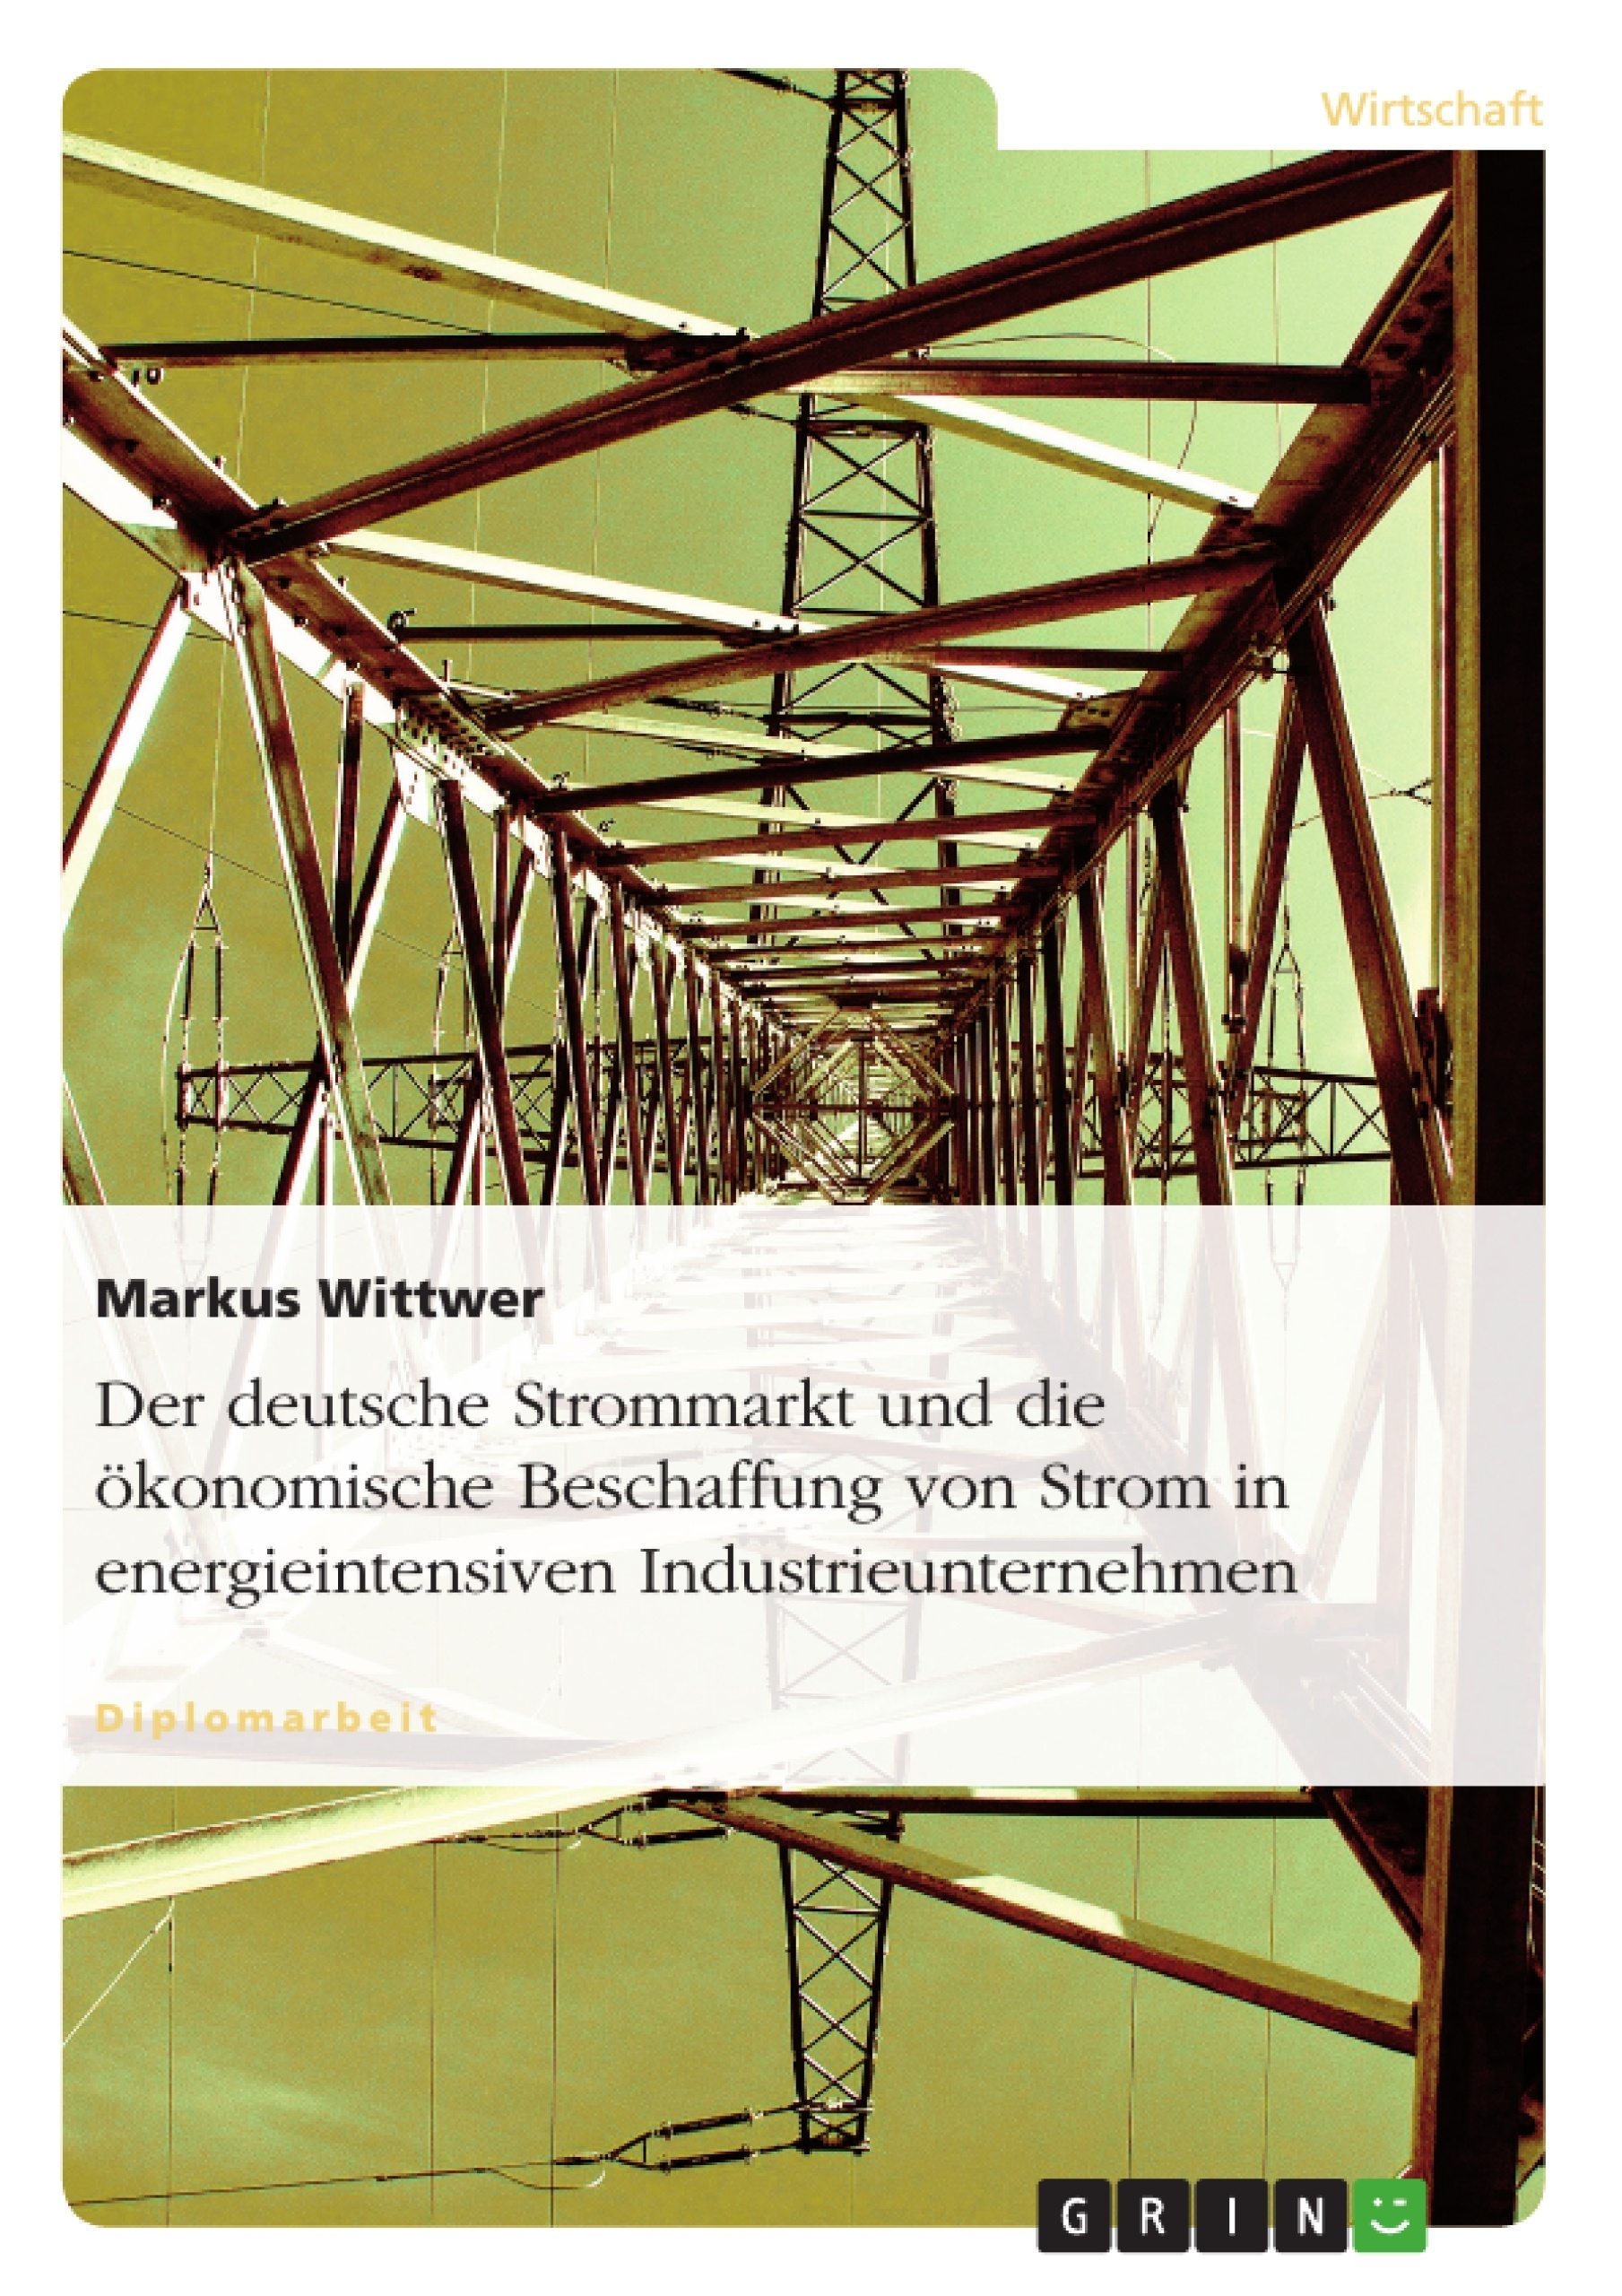 Titel: Der deutsche Strommarkt und die ökonomische Beschaffung von Strom in energieintensiven Industrieunternehmen